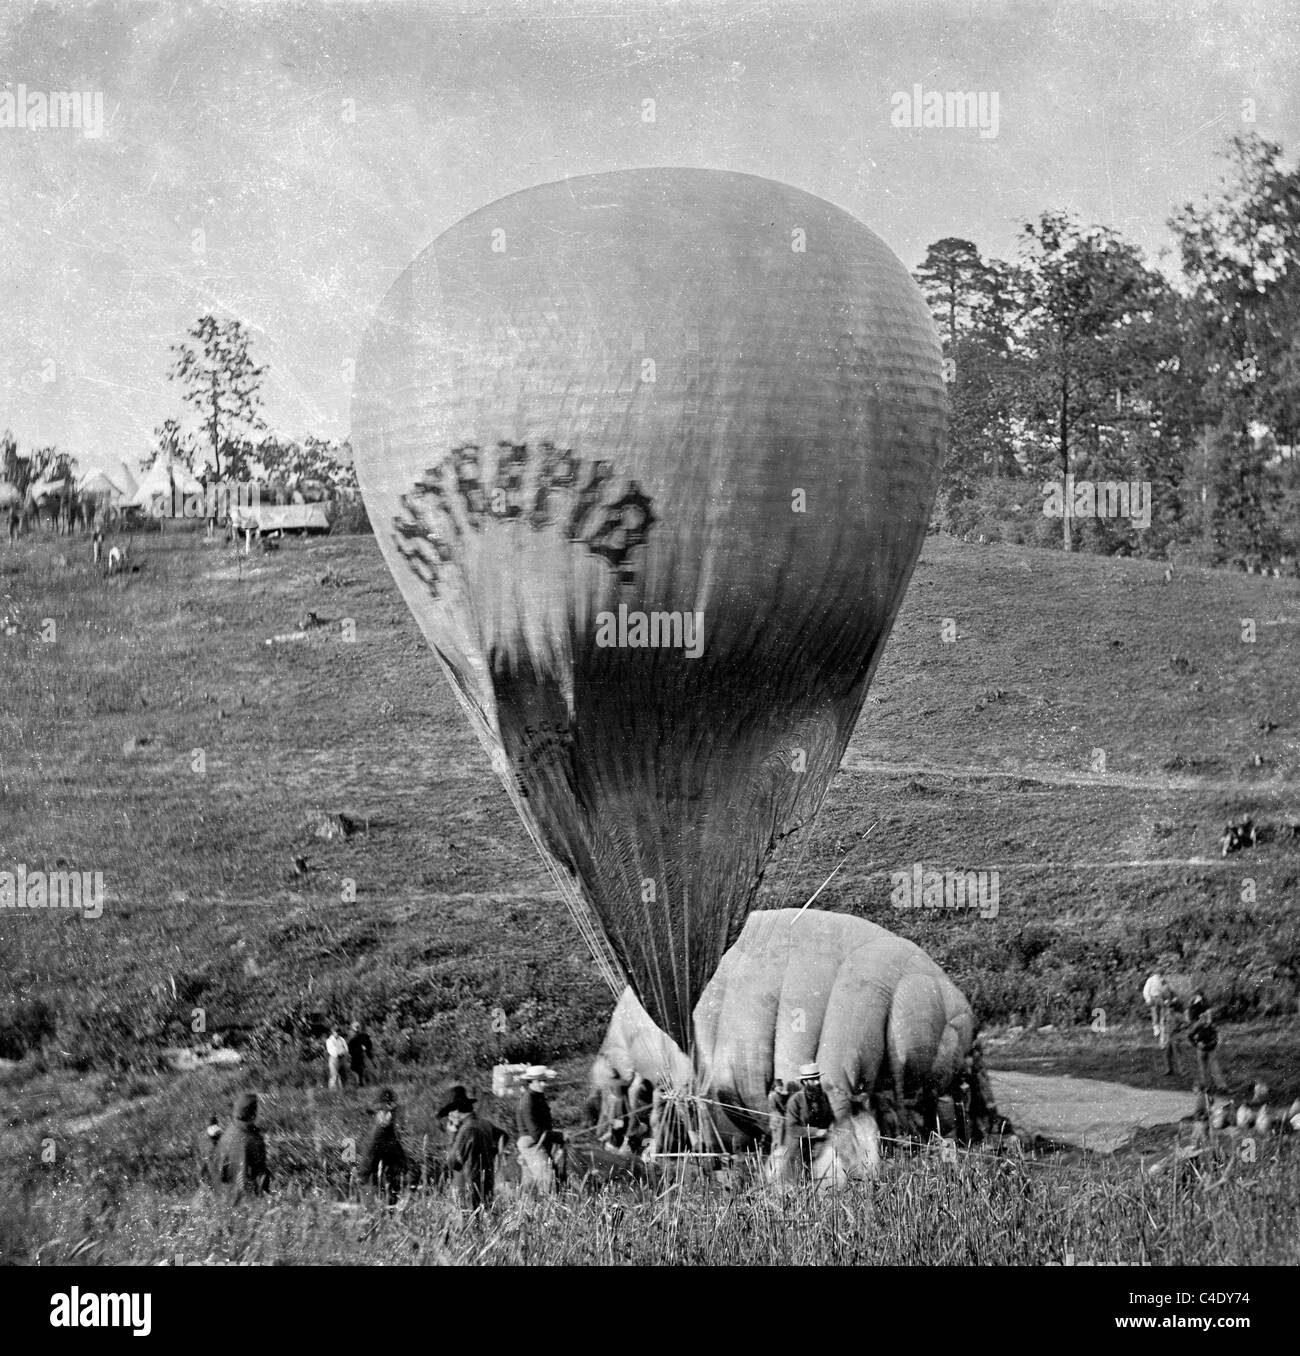 Intrepid hot air balloon durant la guerre civile américaine Banque D'Images